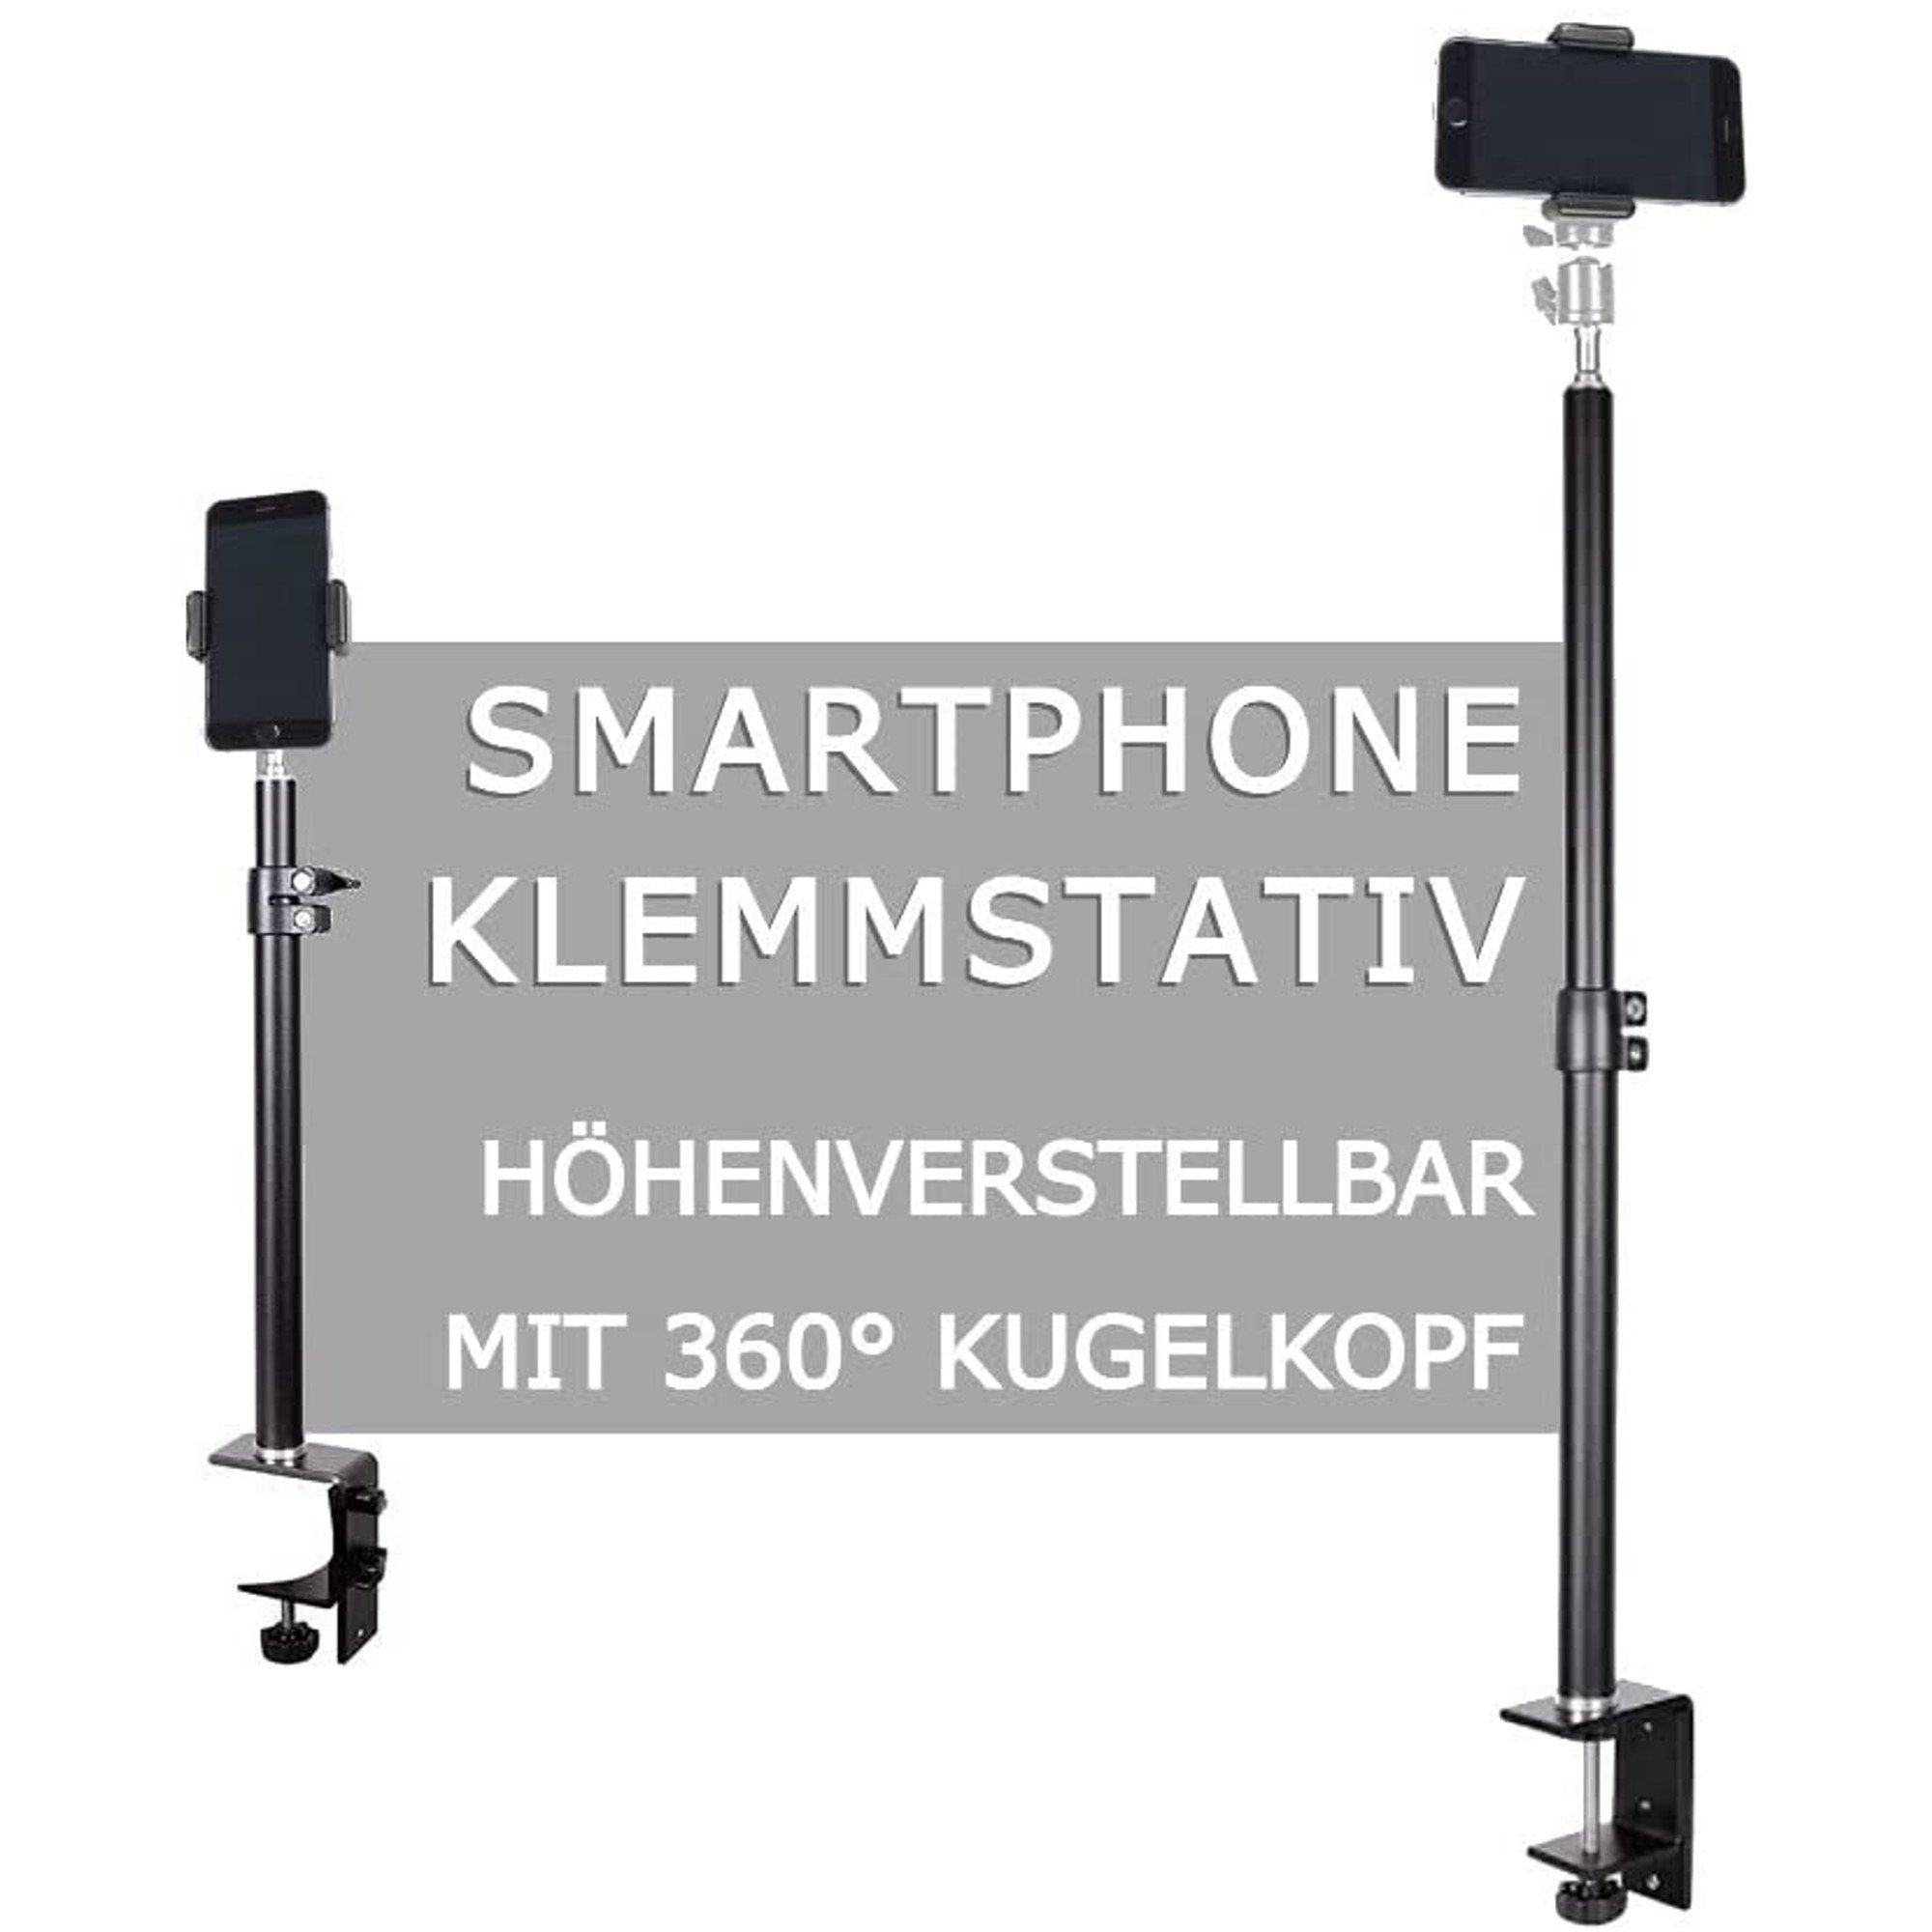 Smartphone Halterung Handyhalter Stativ-Adapter iPhone Samsu